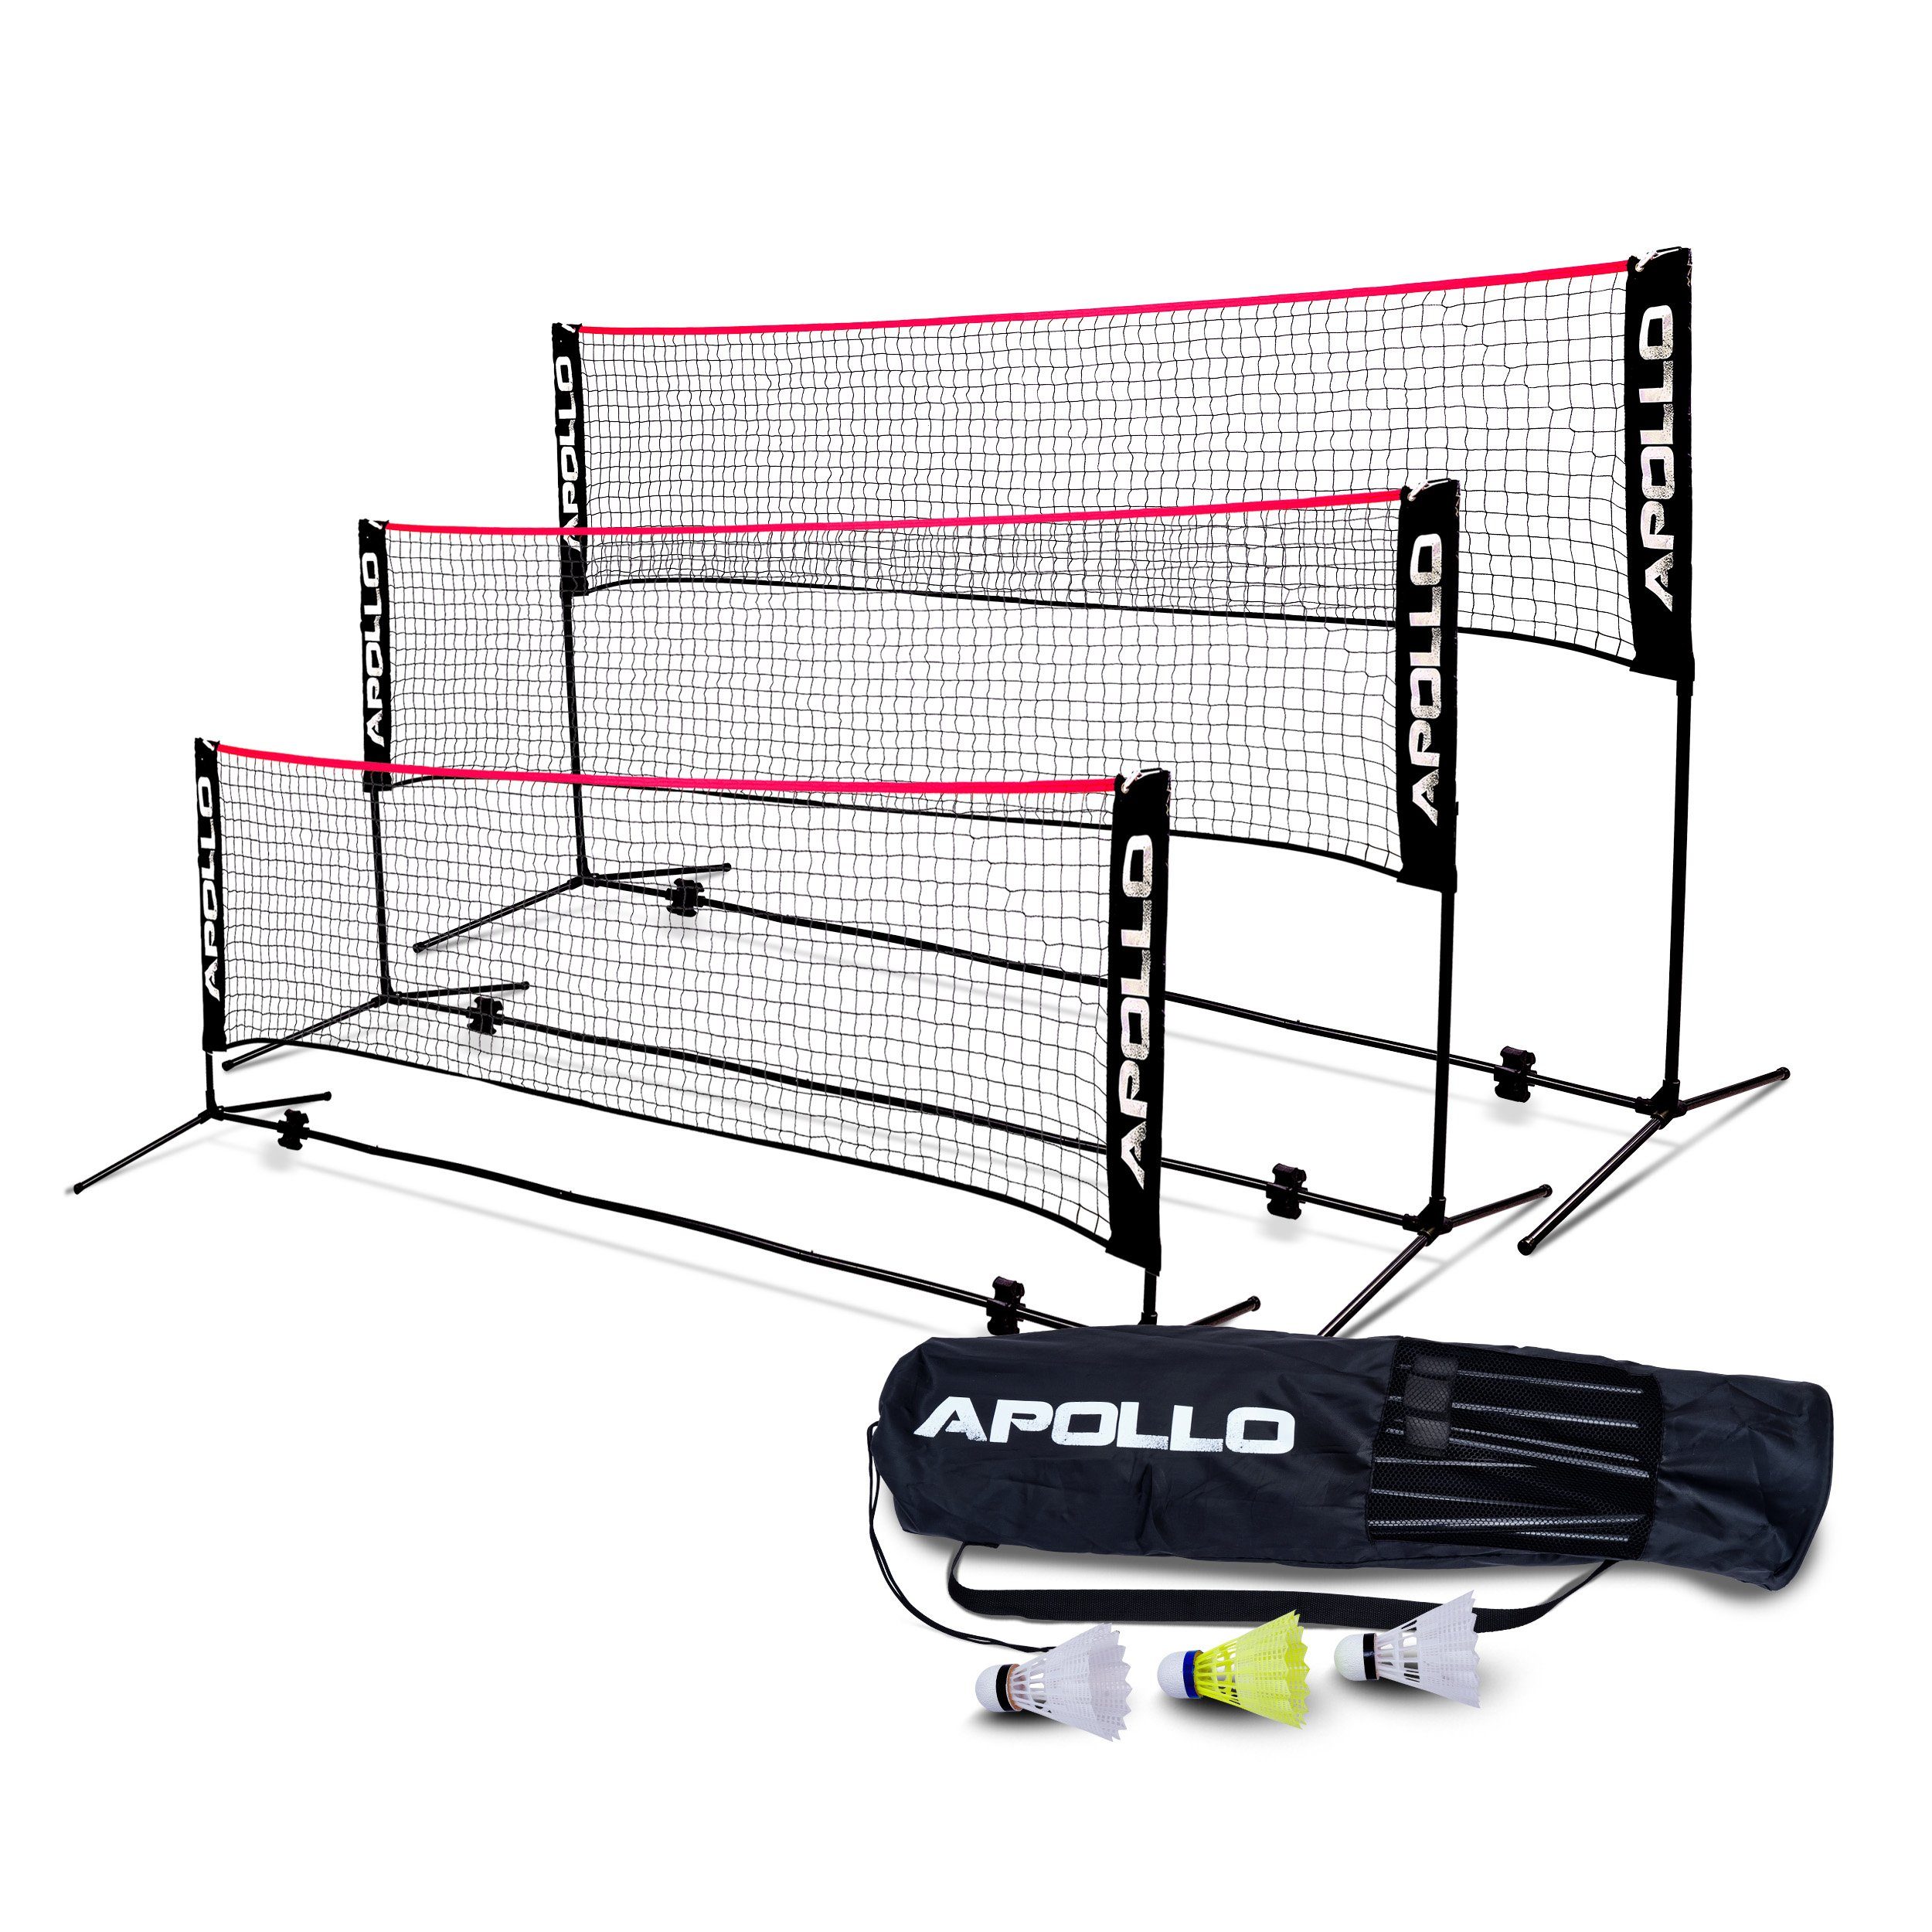 Apollo Badmintonnetz Badminton und Volleyball Netz, 300 cm, 400 cm, 500 cm, höhenverstellbar, inkl. 3 Federbällen Schwarz/Rot